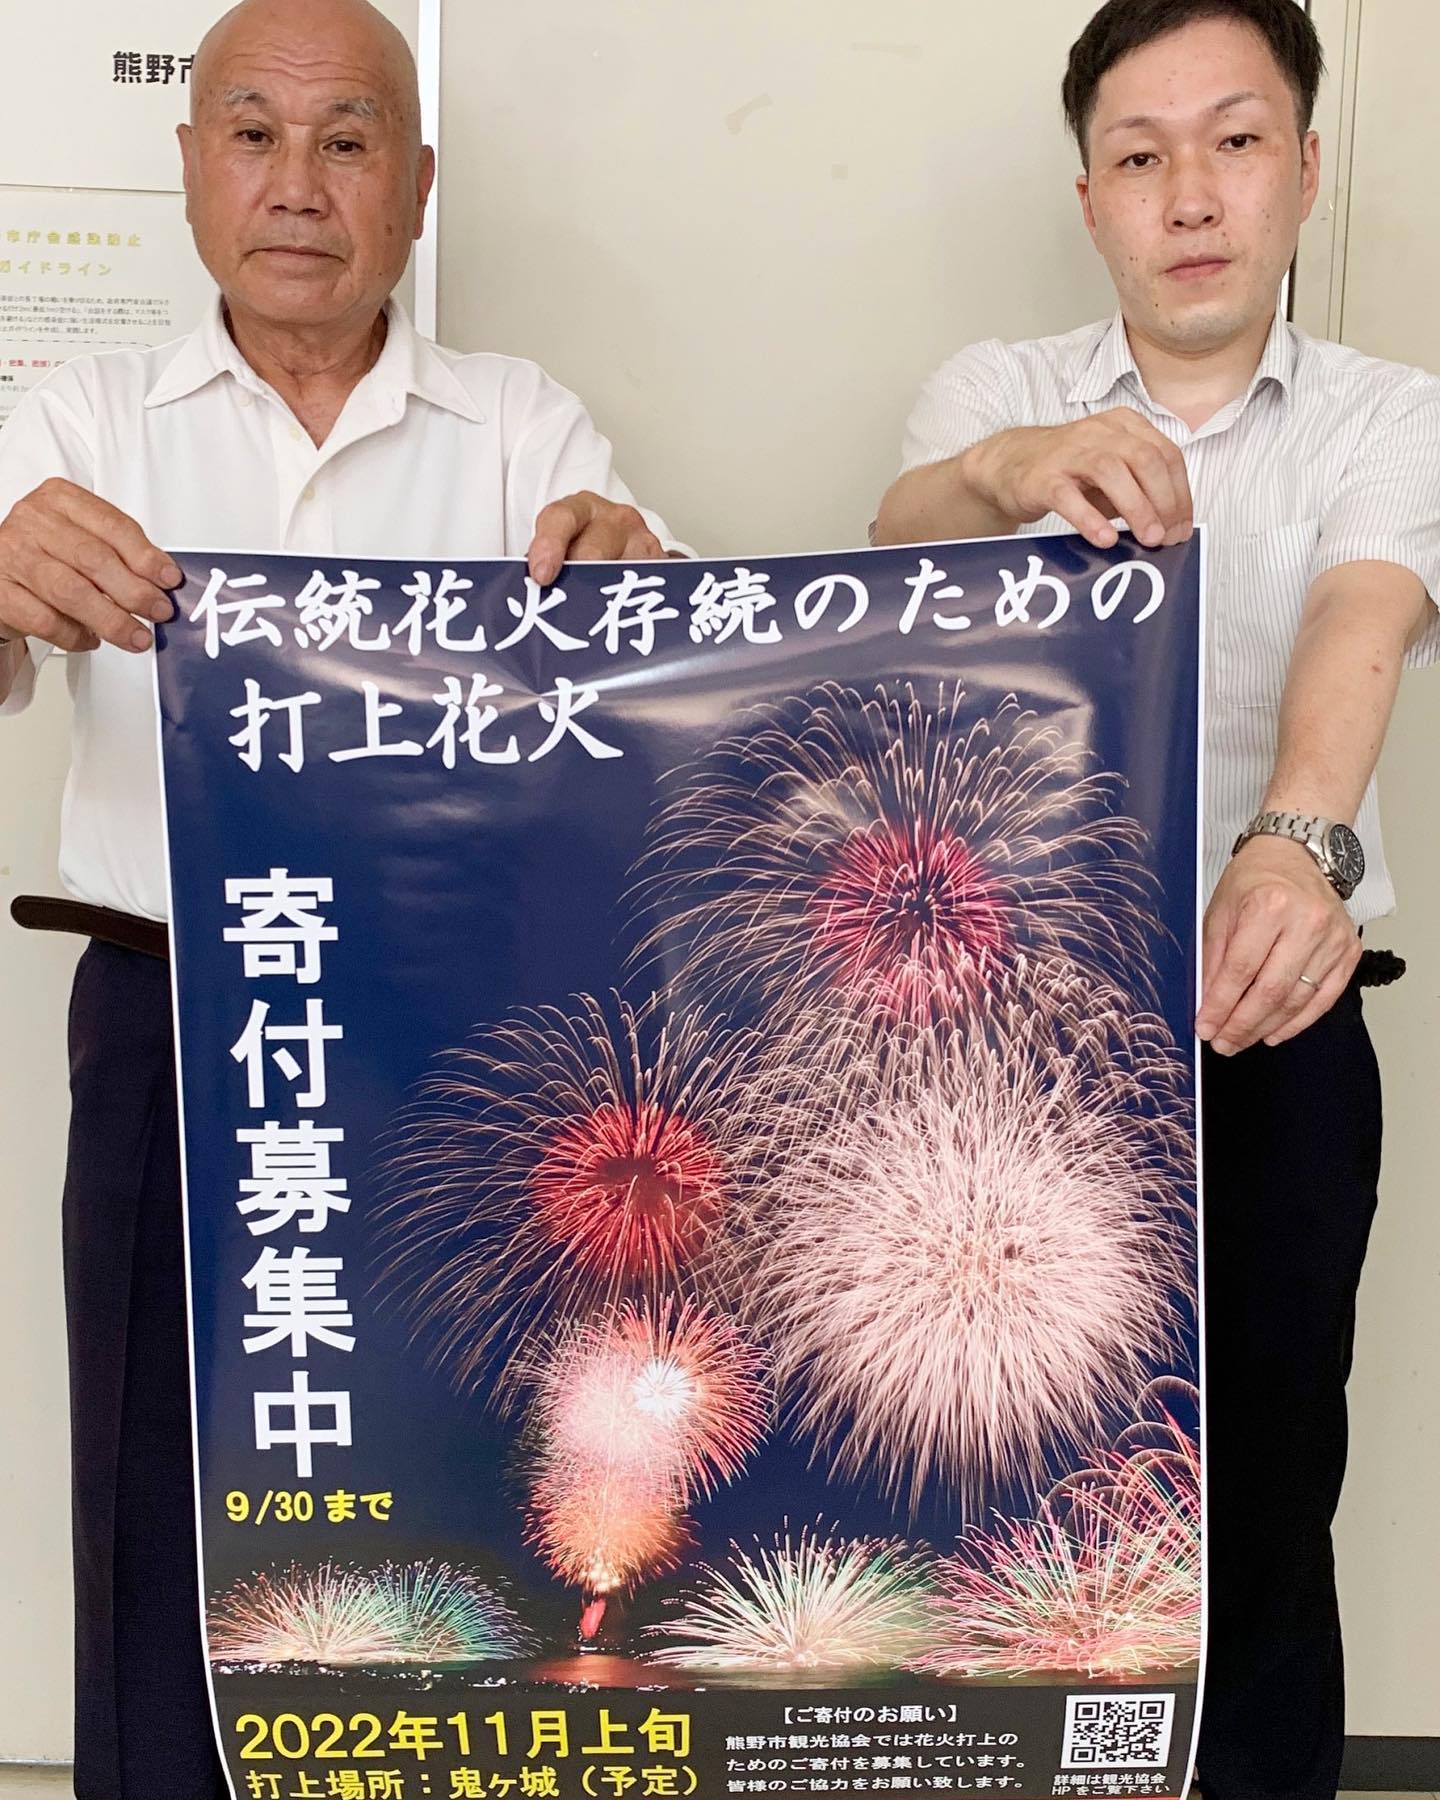 熊野市観光協会は今年11月、木本町の鬼ヶ城（予定）で「伝統花火存続のための打上花火」開催を計画。１日、中平会長が記者発表を行い、開催への想いと寄付への協力を呼び掛けました。
　コロナ禍で３年連続熊野大花火大会が中止となり、この地方にも様々な影響が影を落とすなか、３００有余年の伝統を誇る熊野大花火で毎年フィナーレを飾る鬼ヶ城大仕掛けを手掛けている和田煙火店も苦境に直面している状況。今回は熊野市観光協会として地元唯一の花火業者を支援し、伝統を守っていく観点での打上花火を計画したもの。
　協会では市内外から寄付を募り、その額に応じて花火の内容や規模を決めていく考え。寄付については協会ホームページやＳＮＳなどを通じて情報発信し、現金や書留、振込などで募っていきます。また、宿泊施設や道の駅、観光協会会員の店頭などへ募金箱も設置し、協力を呼び掛けます。
　寄付は９月30日まで受け付け、花火の内容などについては改めて発表します。
　問い合わせは同協会（0597・89・0100）または同協会ホームページの参照を。
#吉野熊野新聞#ヨシクマ新聞#よしくま#熊野市#御浜町#紀宝町#新宮市#尾鷲市#世界遺産#パワースポット#熊野大花火#鬼ヶ城大仕掛け#熊野市観光協会
ヨシクマ新聞
https://www.yosikuma.com/